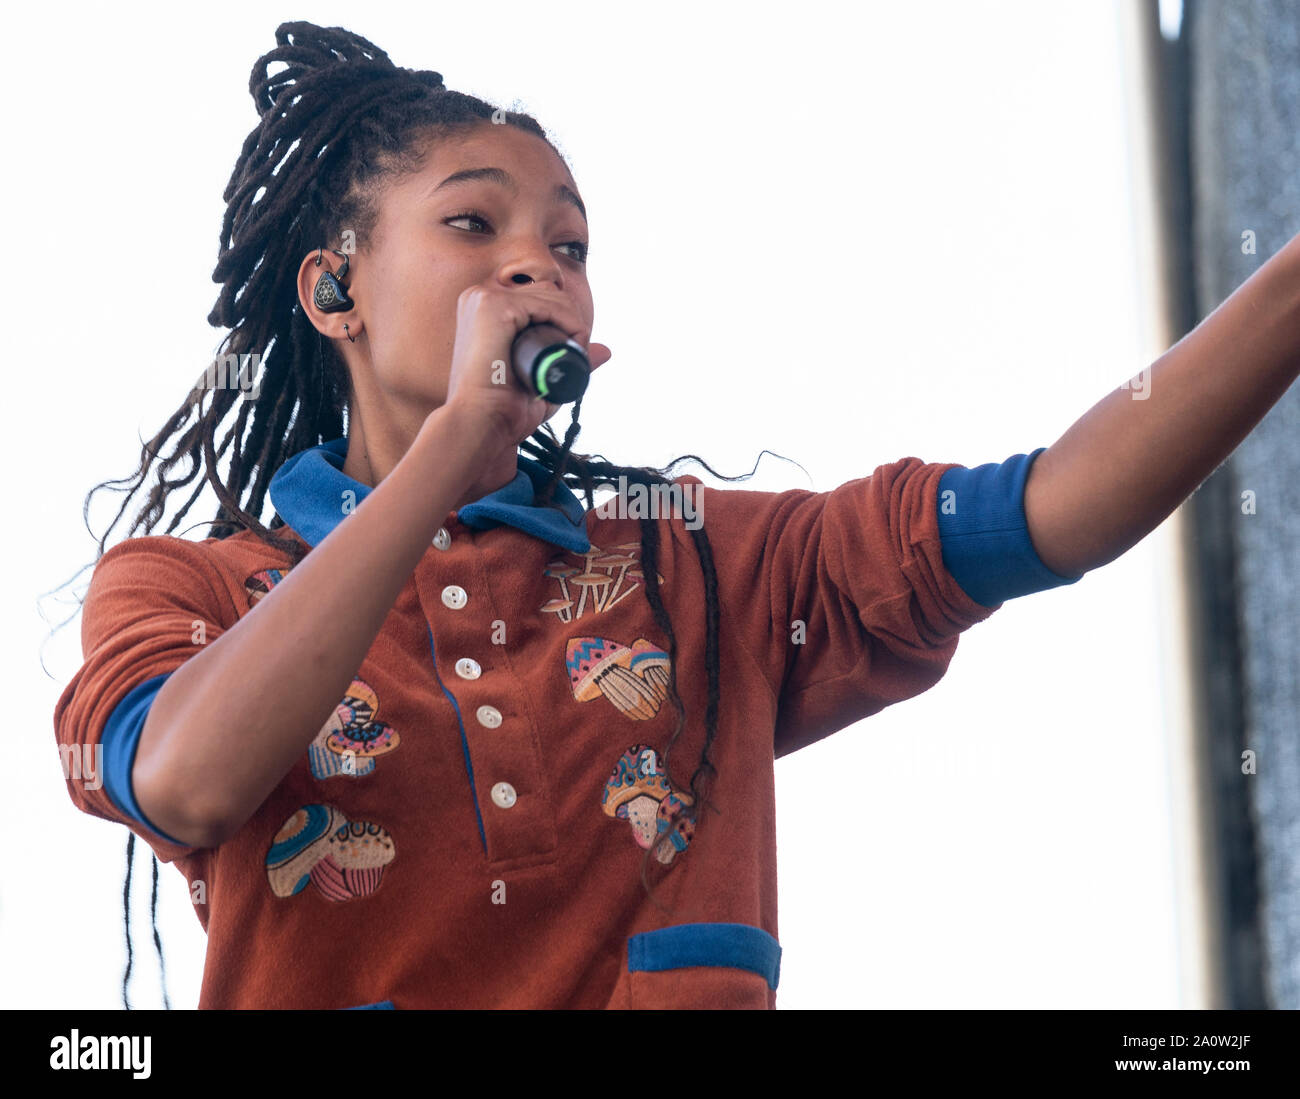 NEW YORK, NY - 20 settembre: Willow Smith esegue sul palco durante il clima di NYC Strike rally e dimostrazione a Battery Park il 20 settembre 2019 in Foto Stock